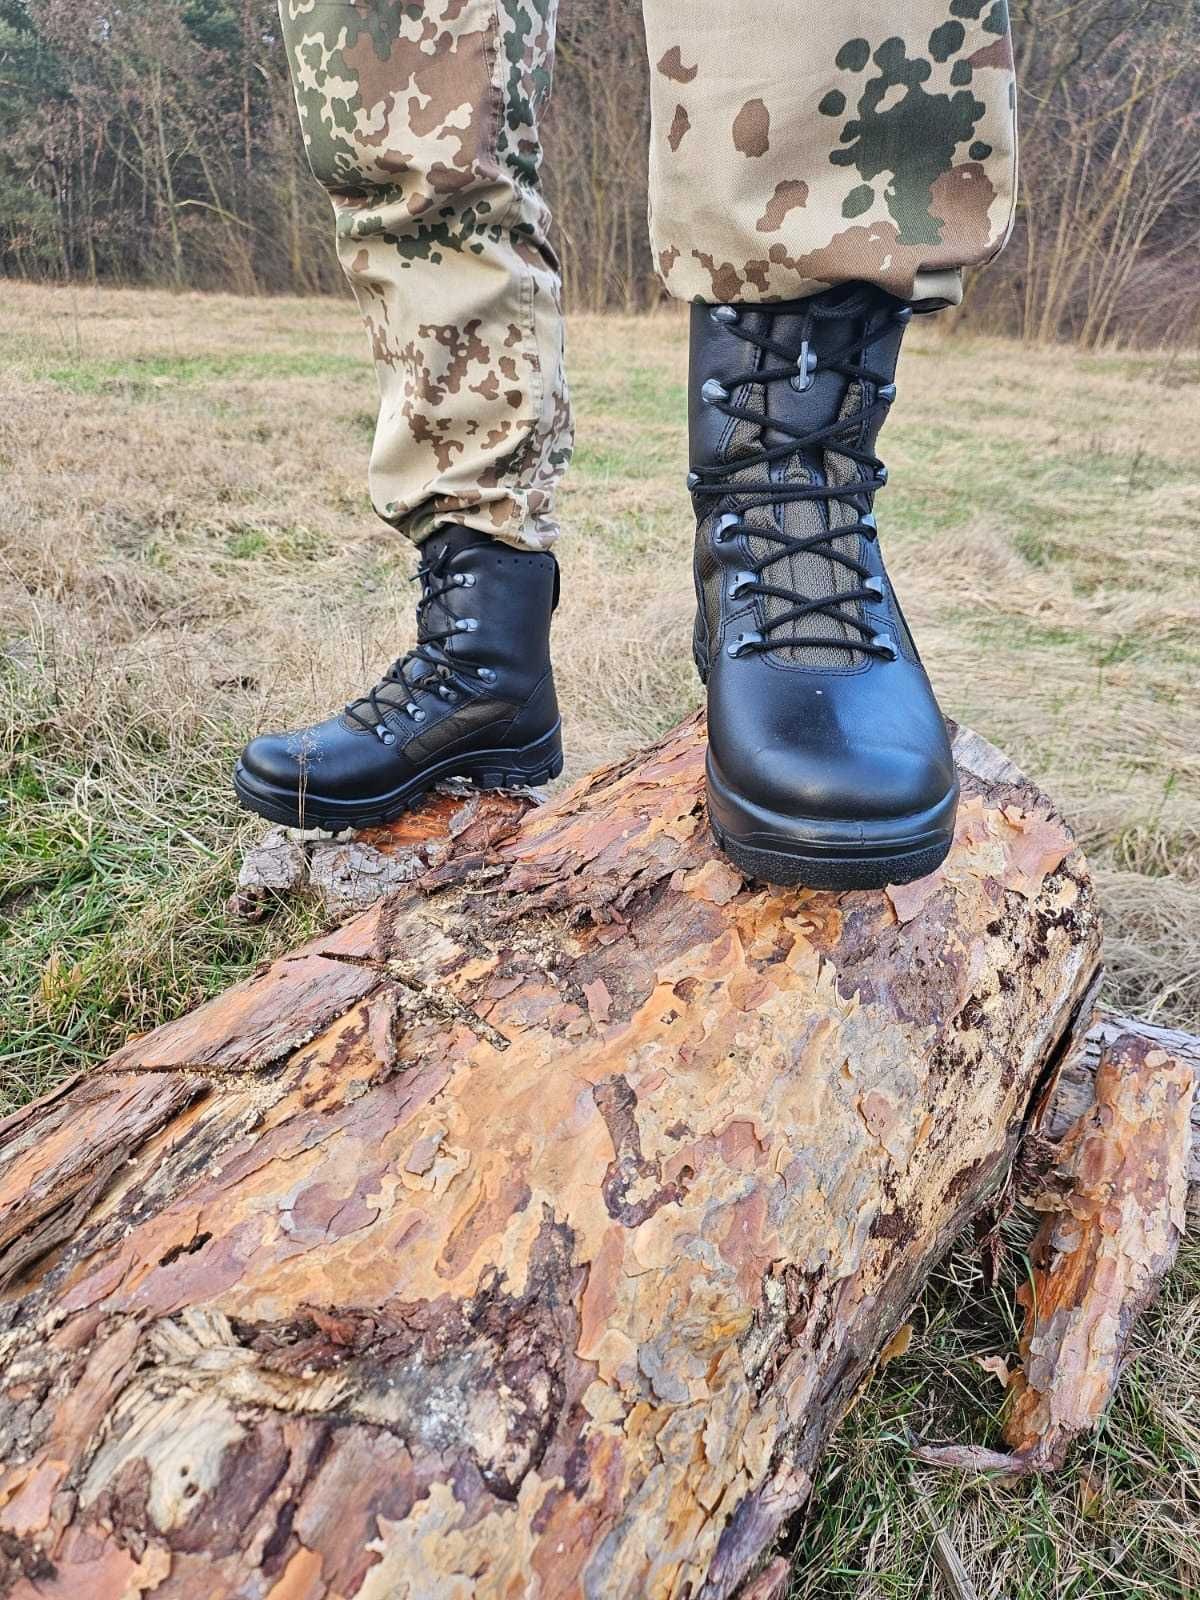 Buty skora codura  wojskowe długość wkładki 26cm .a6